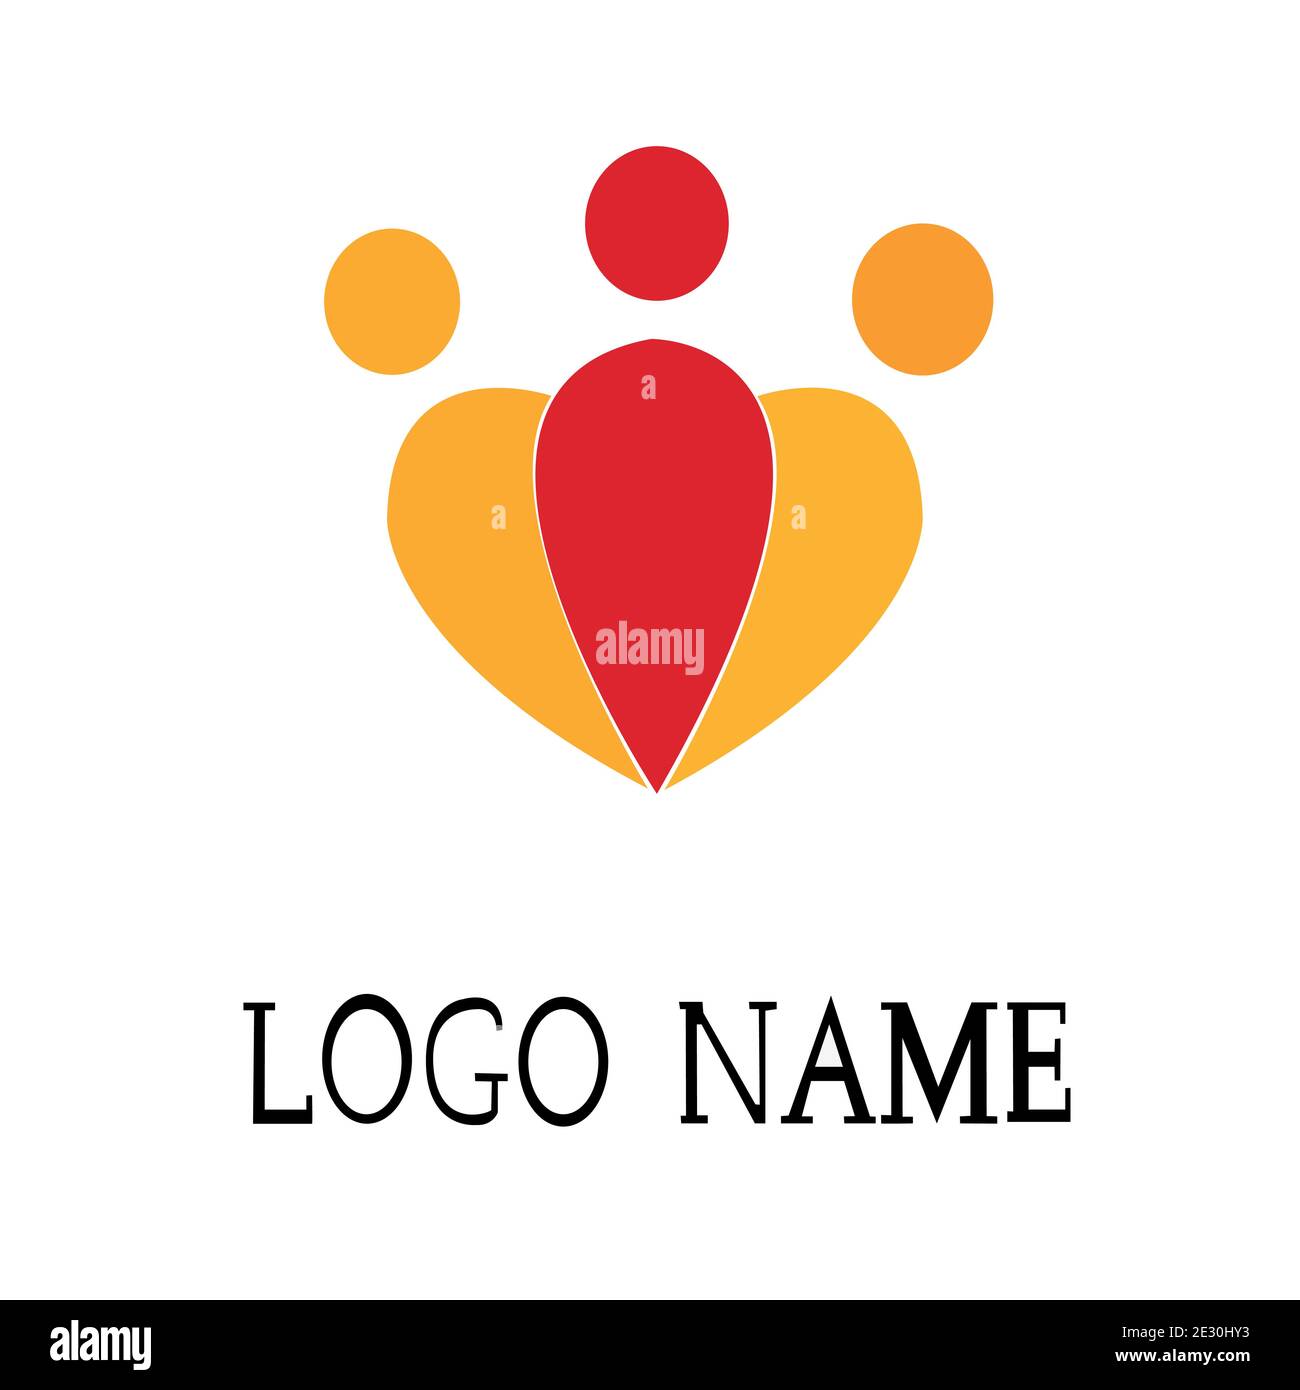 Entrepreneur logo vector design  for businessman Stock Vector